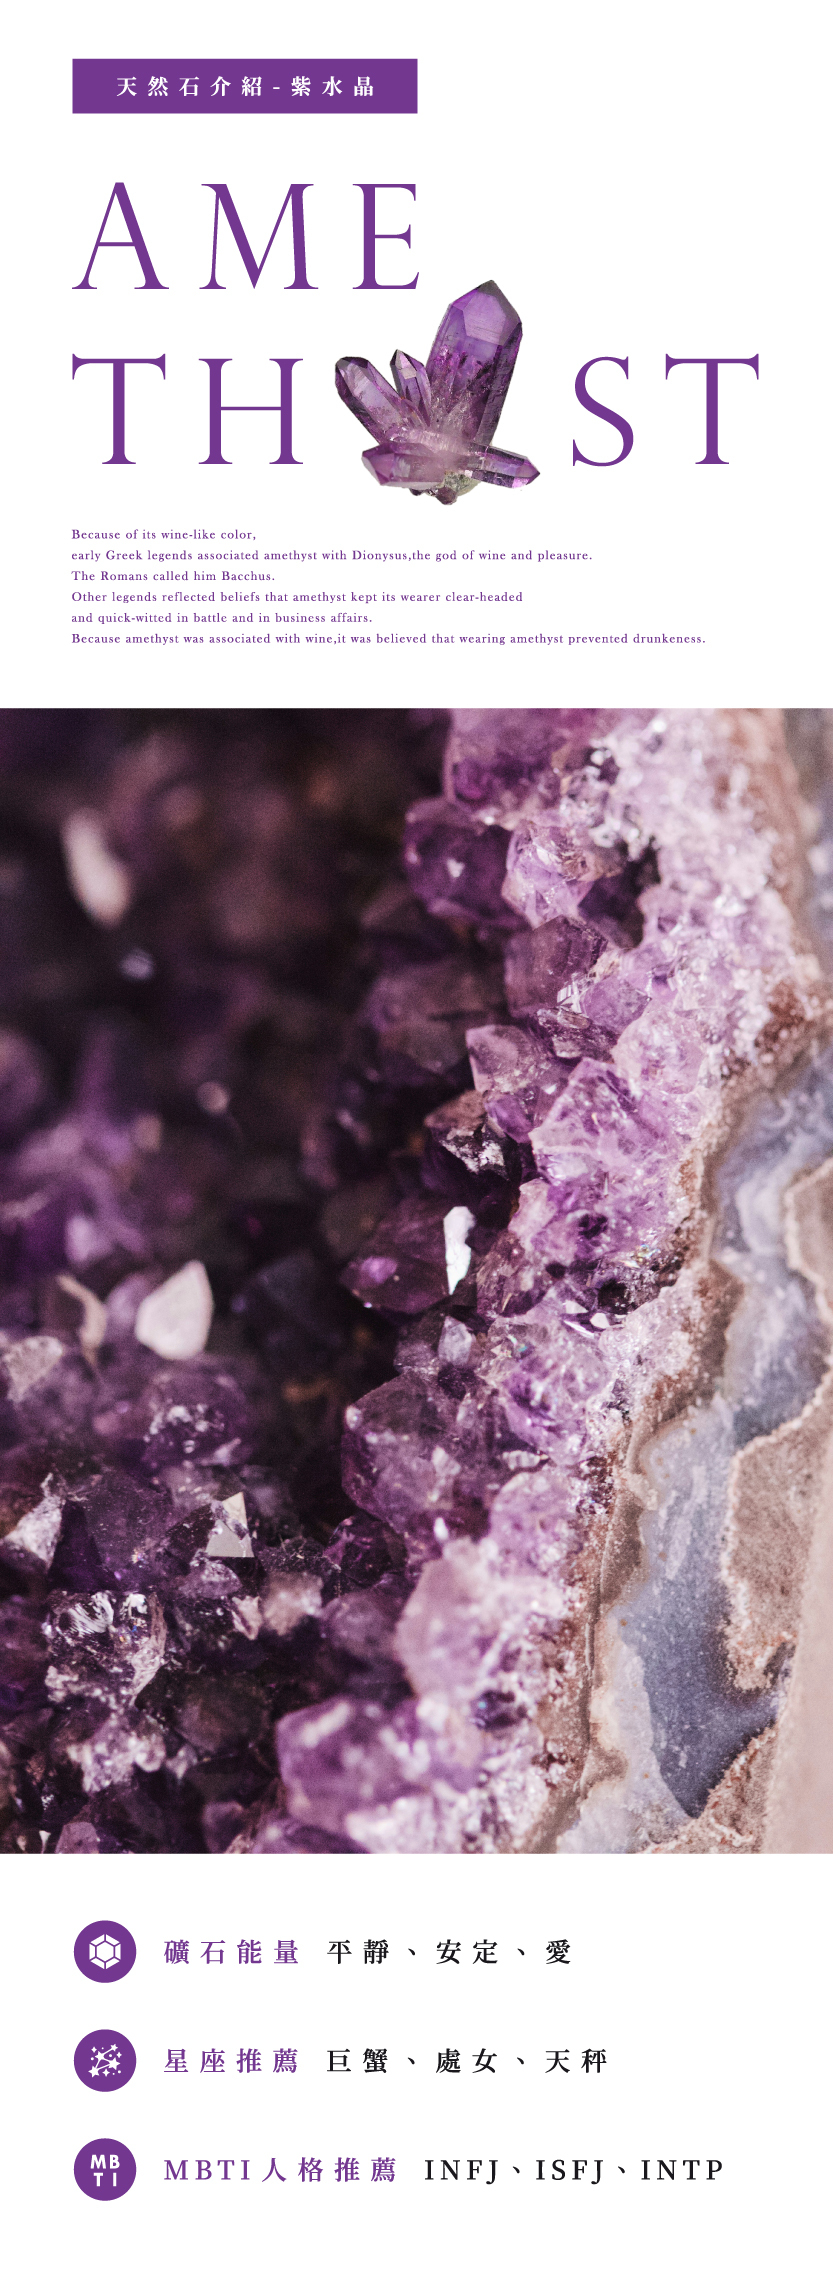 天然石介紹- 紫水晶Amethyst